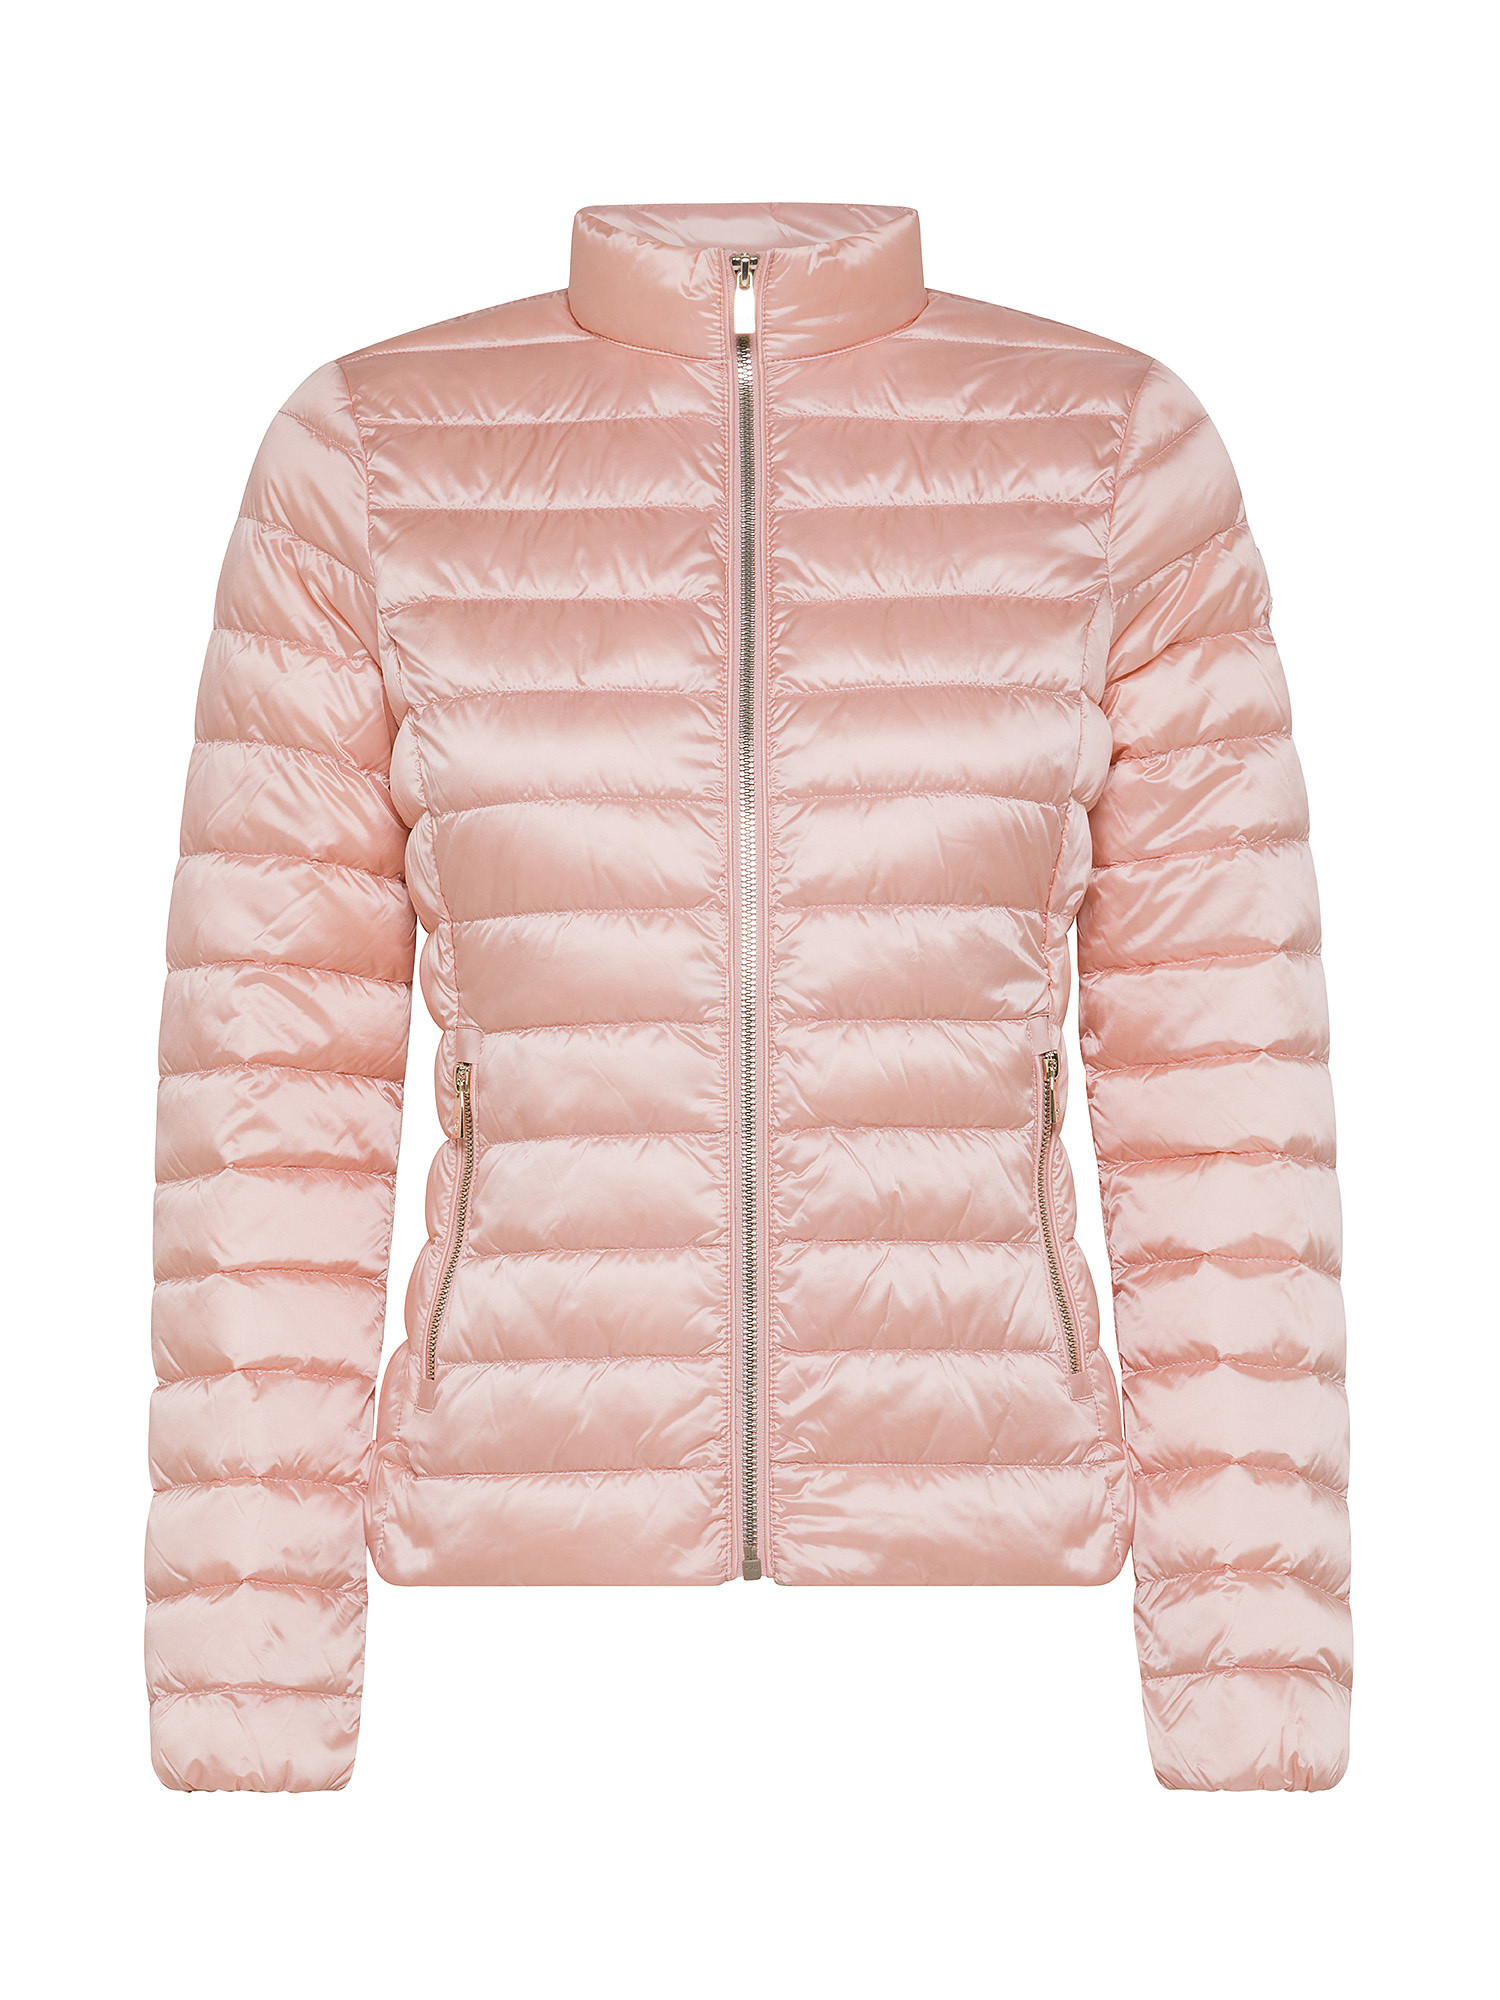 Ciesse Piumini - Pola Long down jacket, Powder Pink, large image number 0